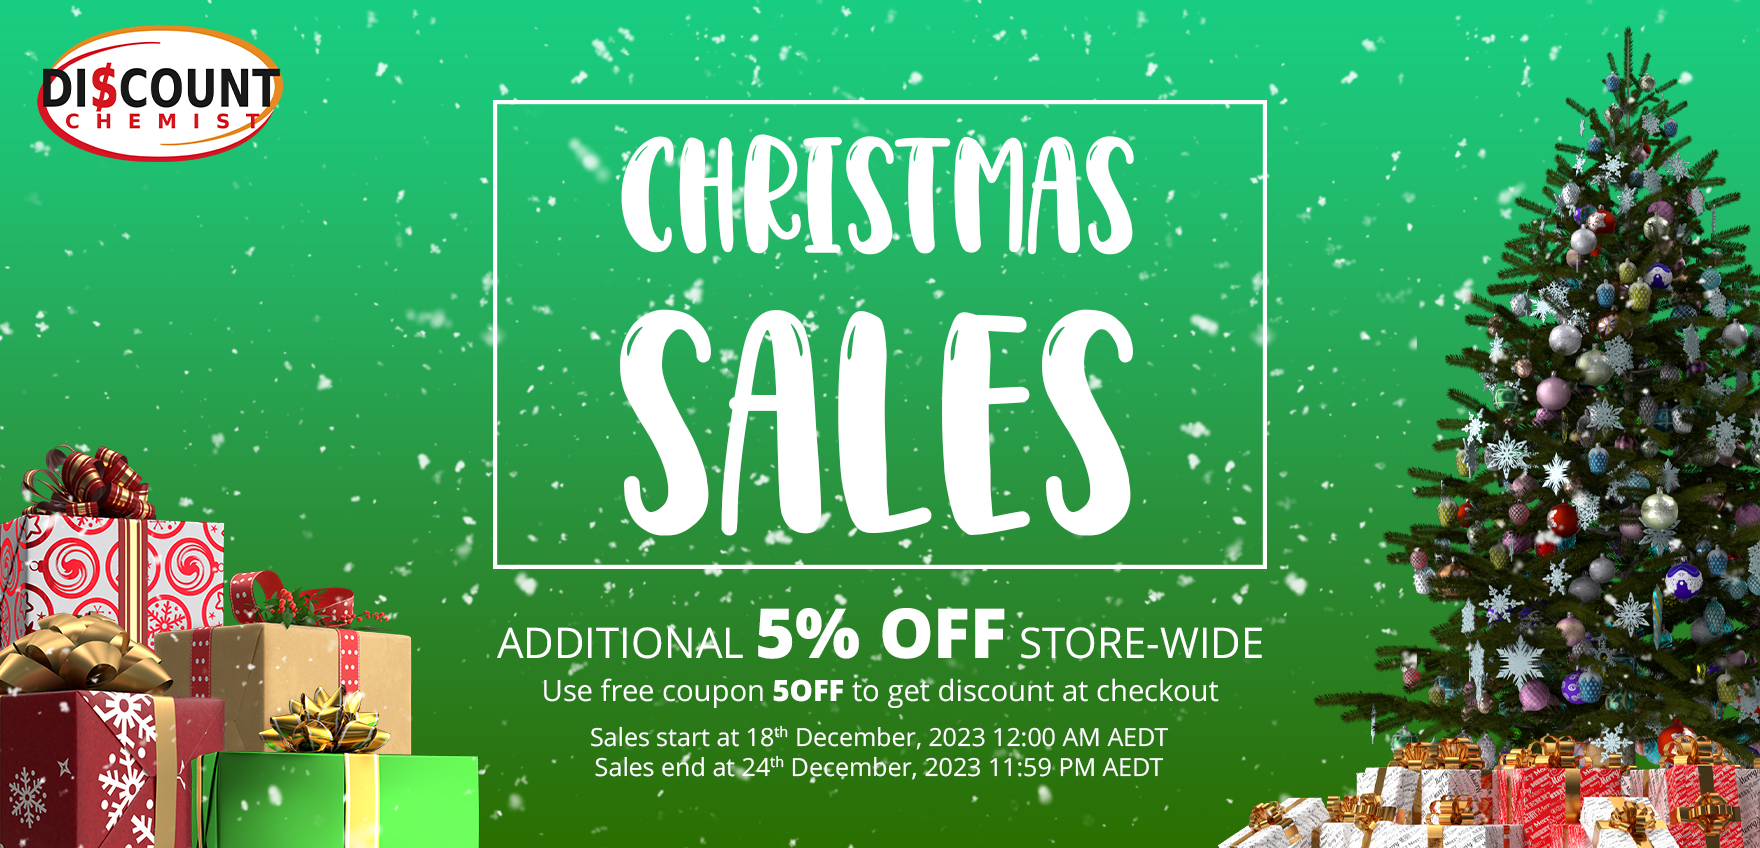 https://discountchemist.com.au/wp-content/uploads/2023/12/Christmas-Sales-2023-4.jpg